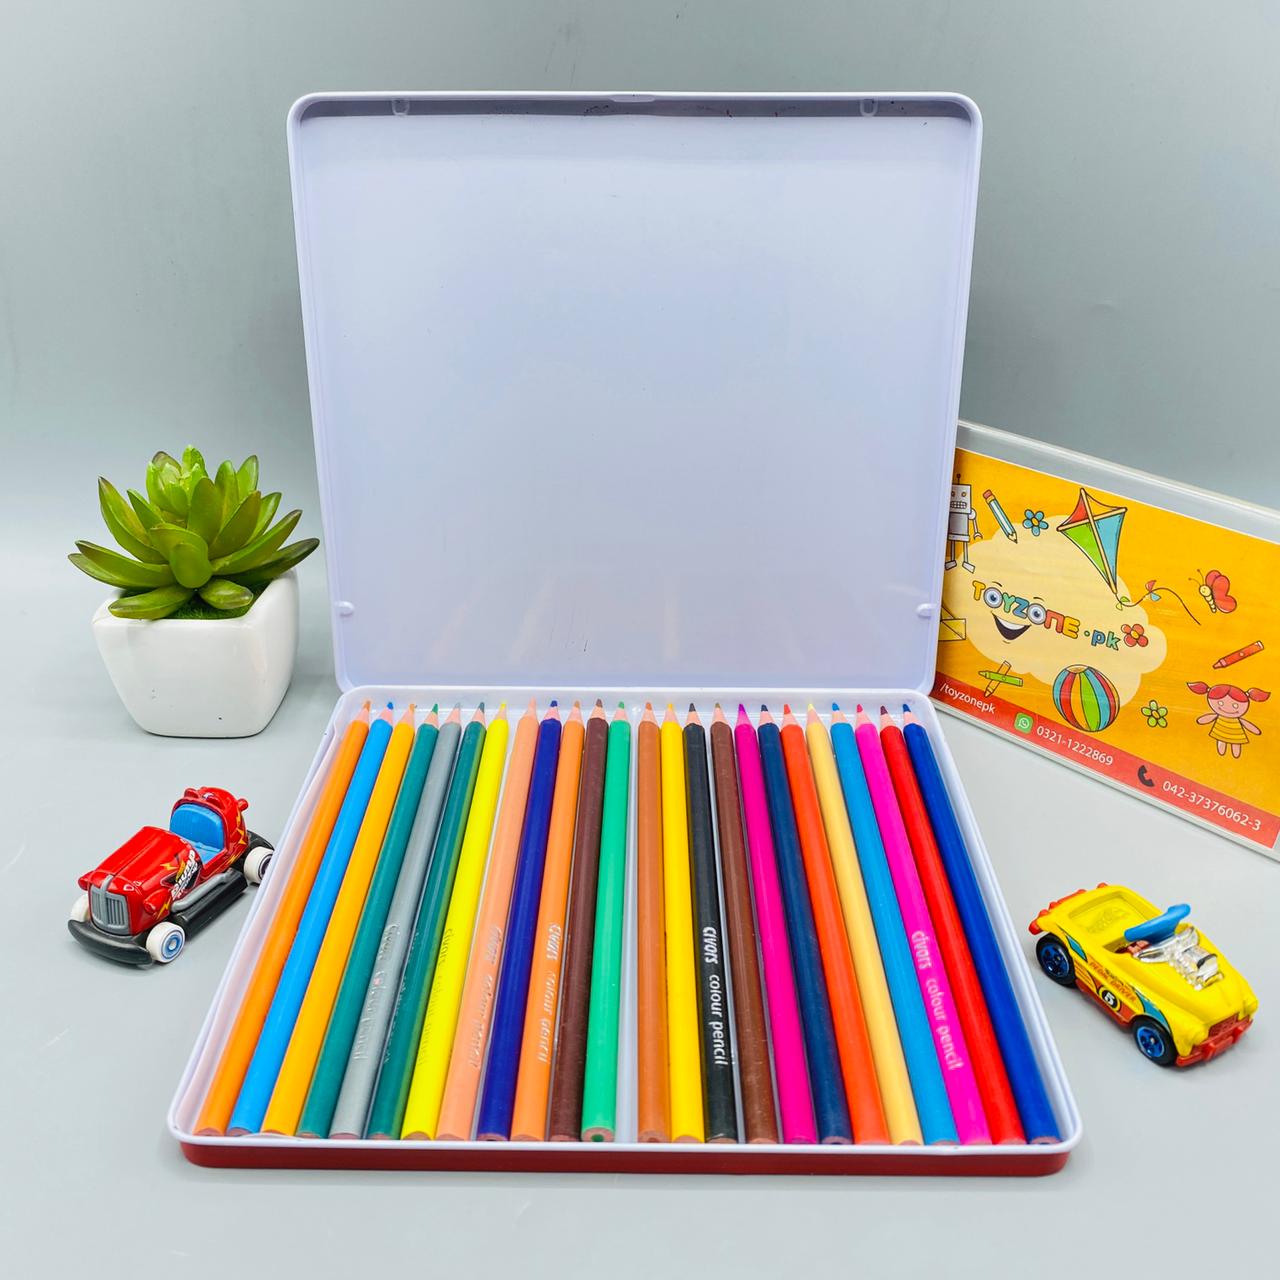 Vneeds Brilliant Color Pencils (24) PCs